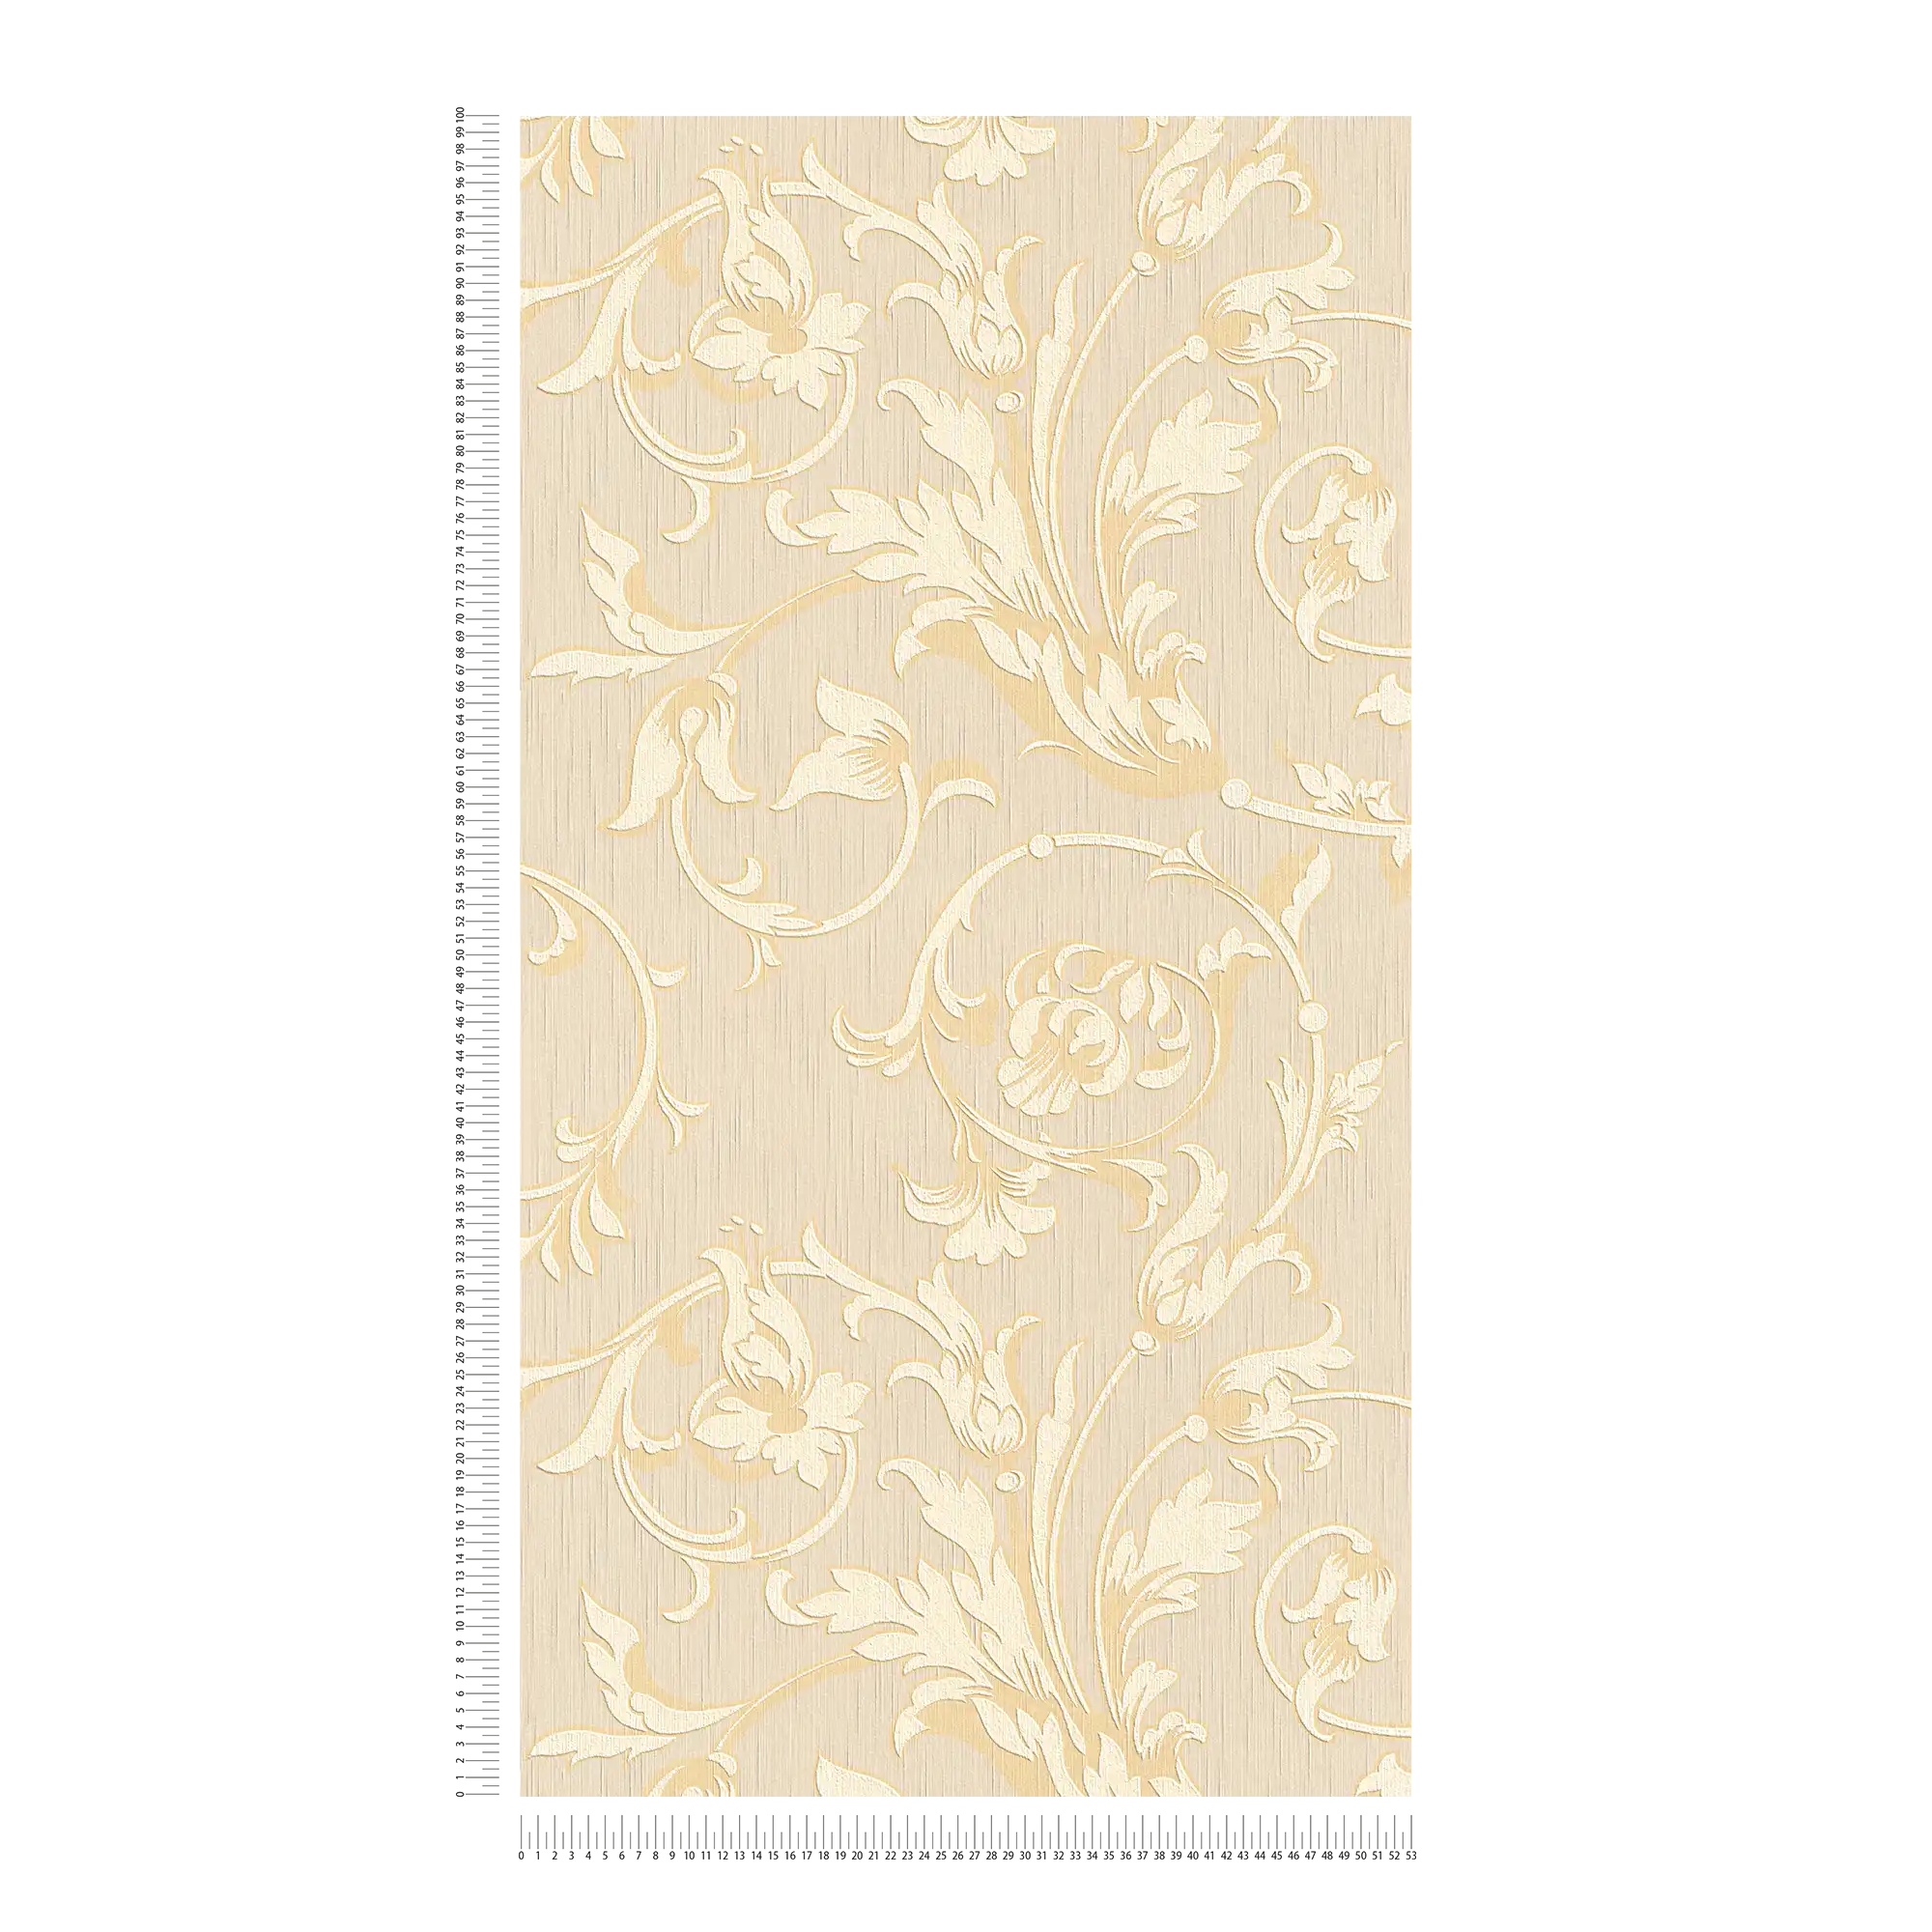             papier peint en papier ornemental aspect soie - crème, or, beige
        